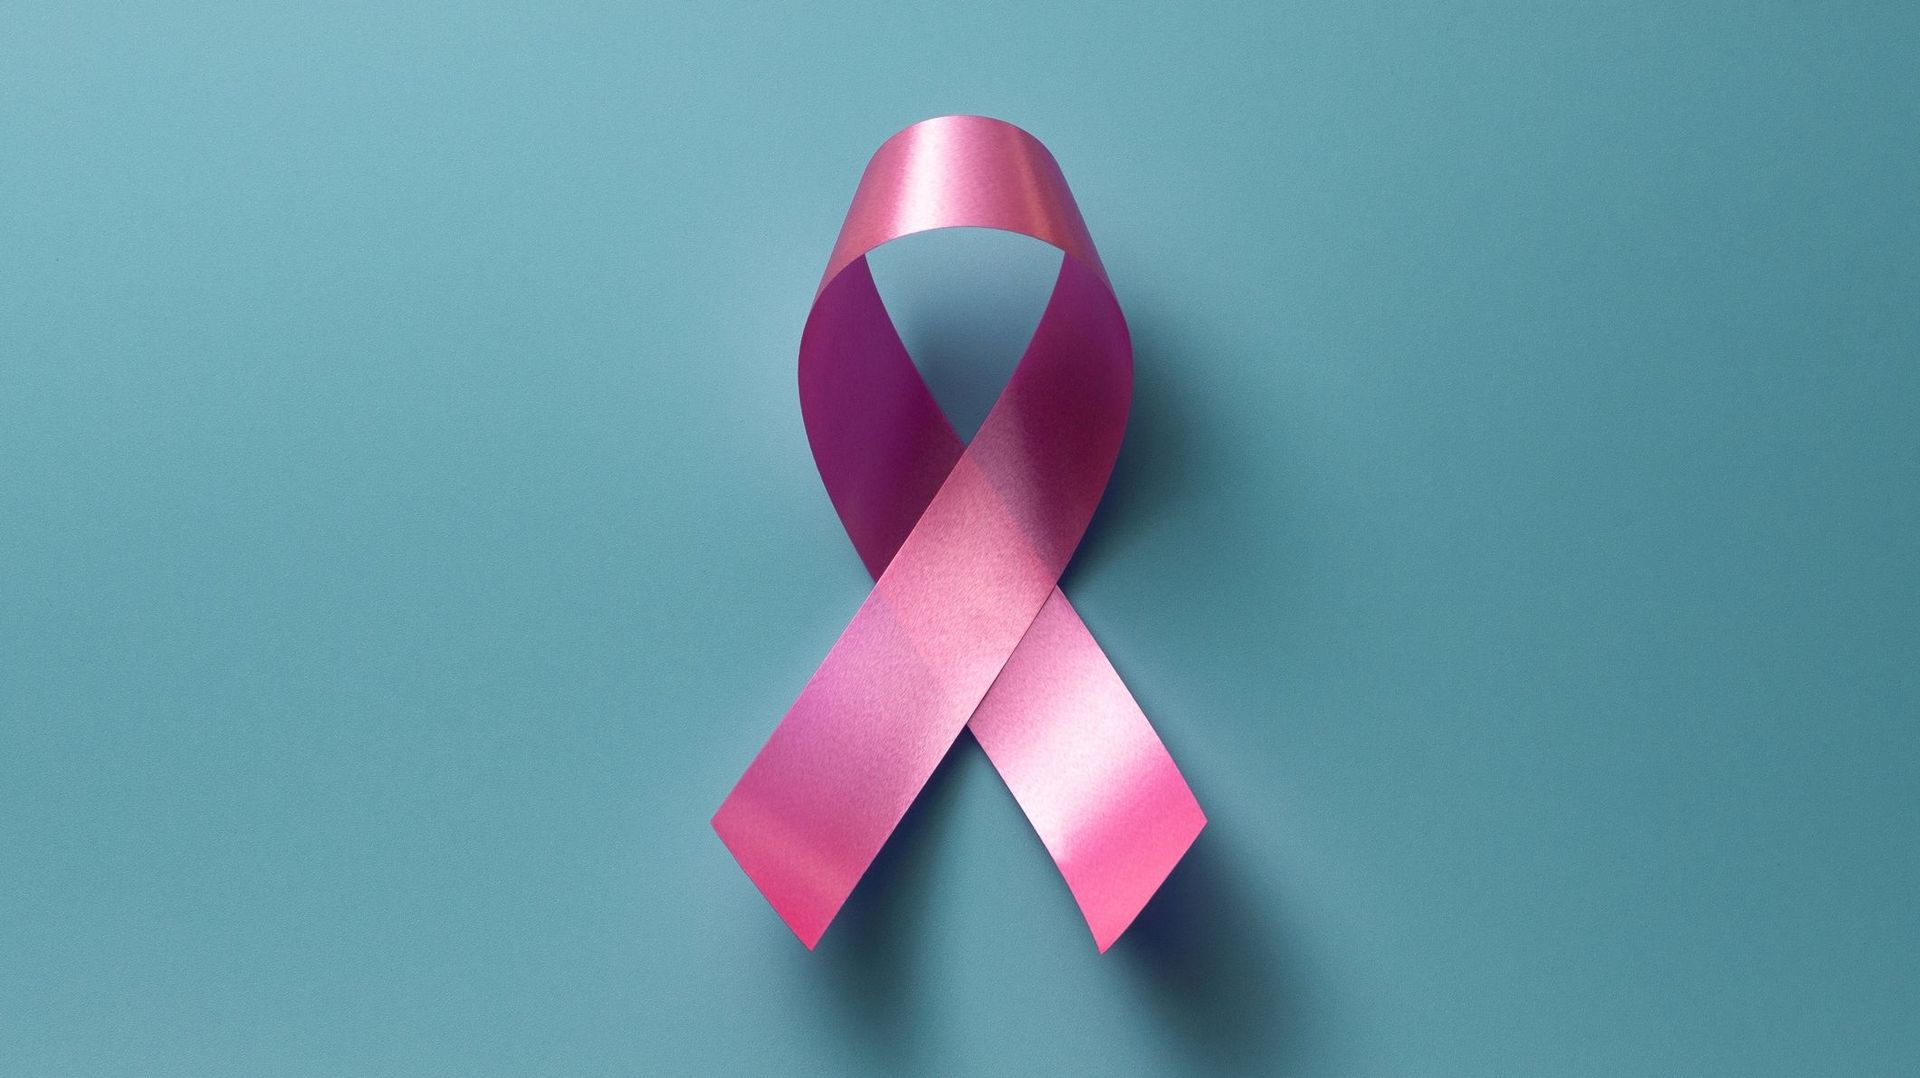 Le ruban rose, symbole de lutte contre le cancer du sein